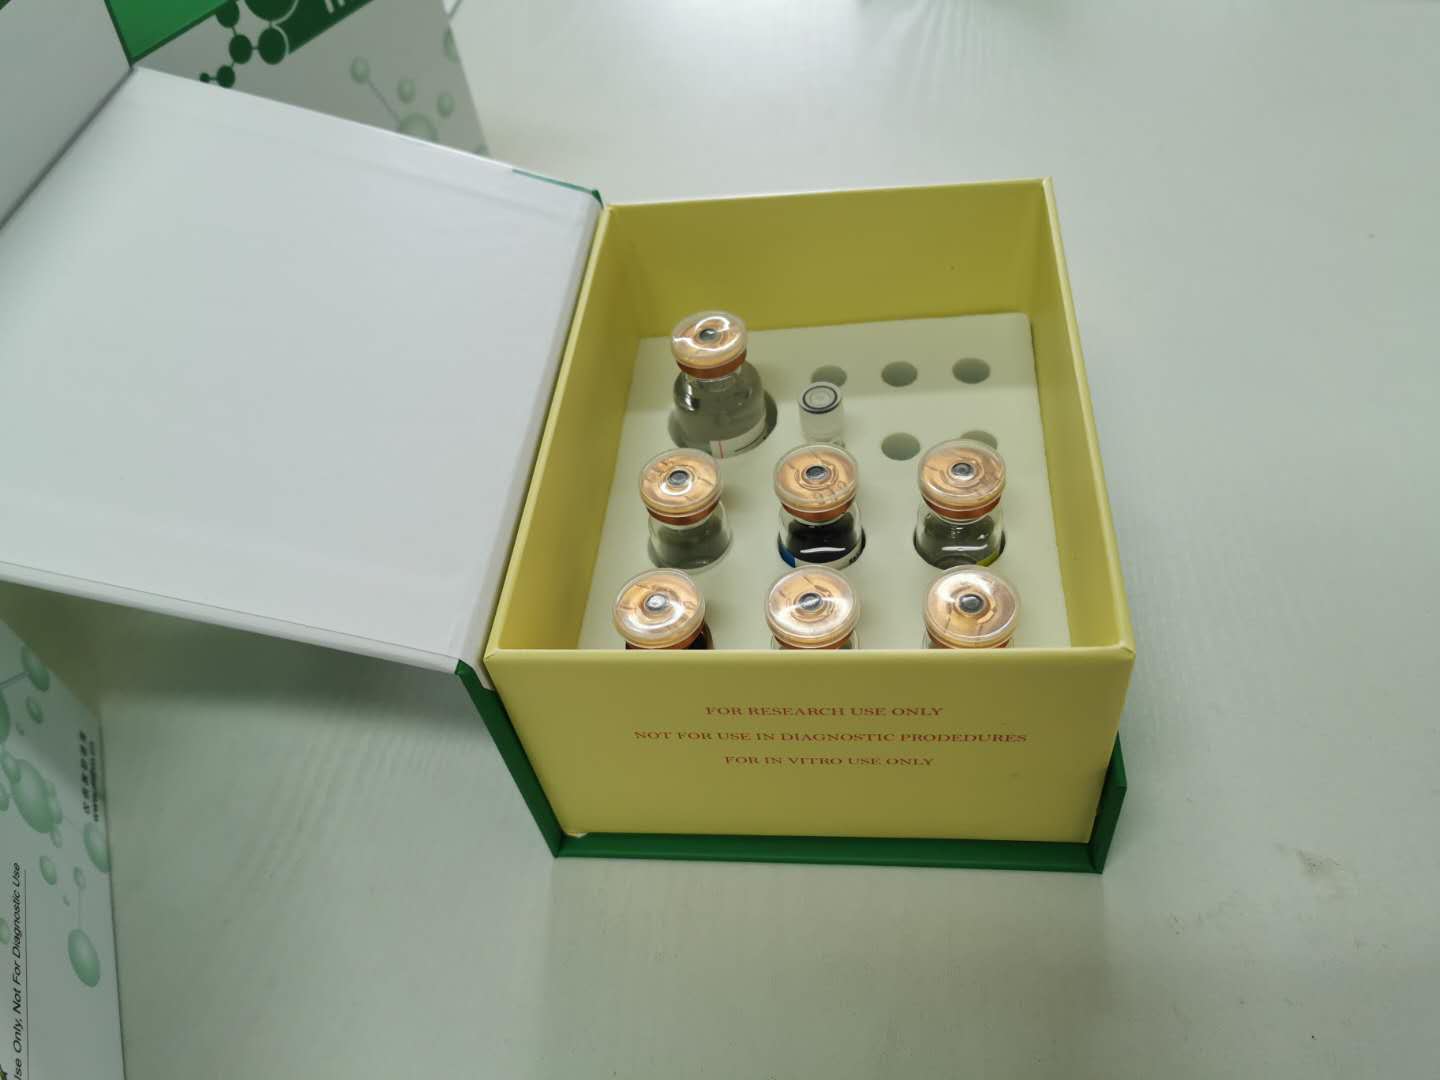 科研专业大鼠毒蕈碱型乙酰胆碱受体试剂盒